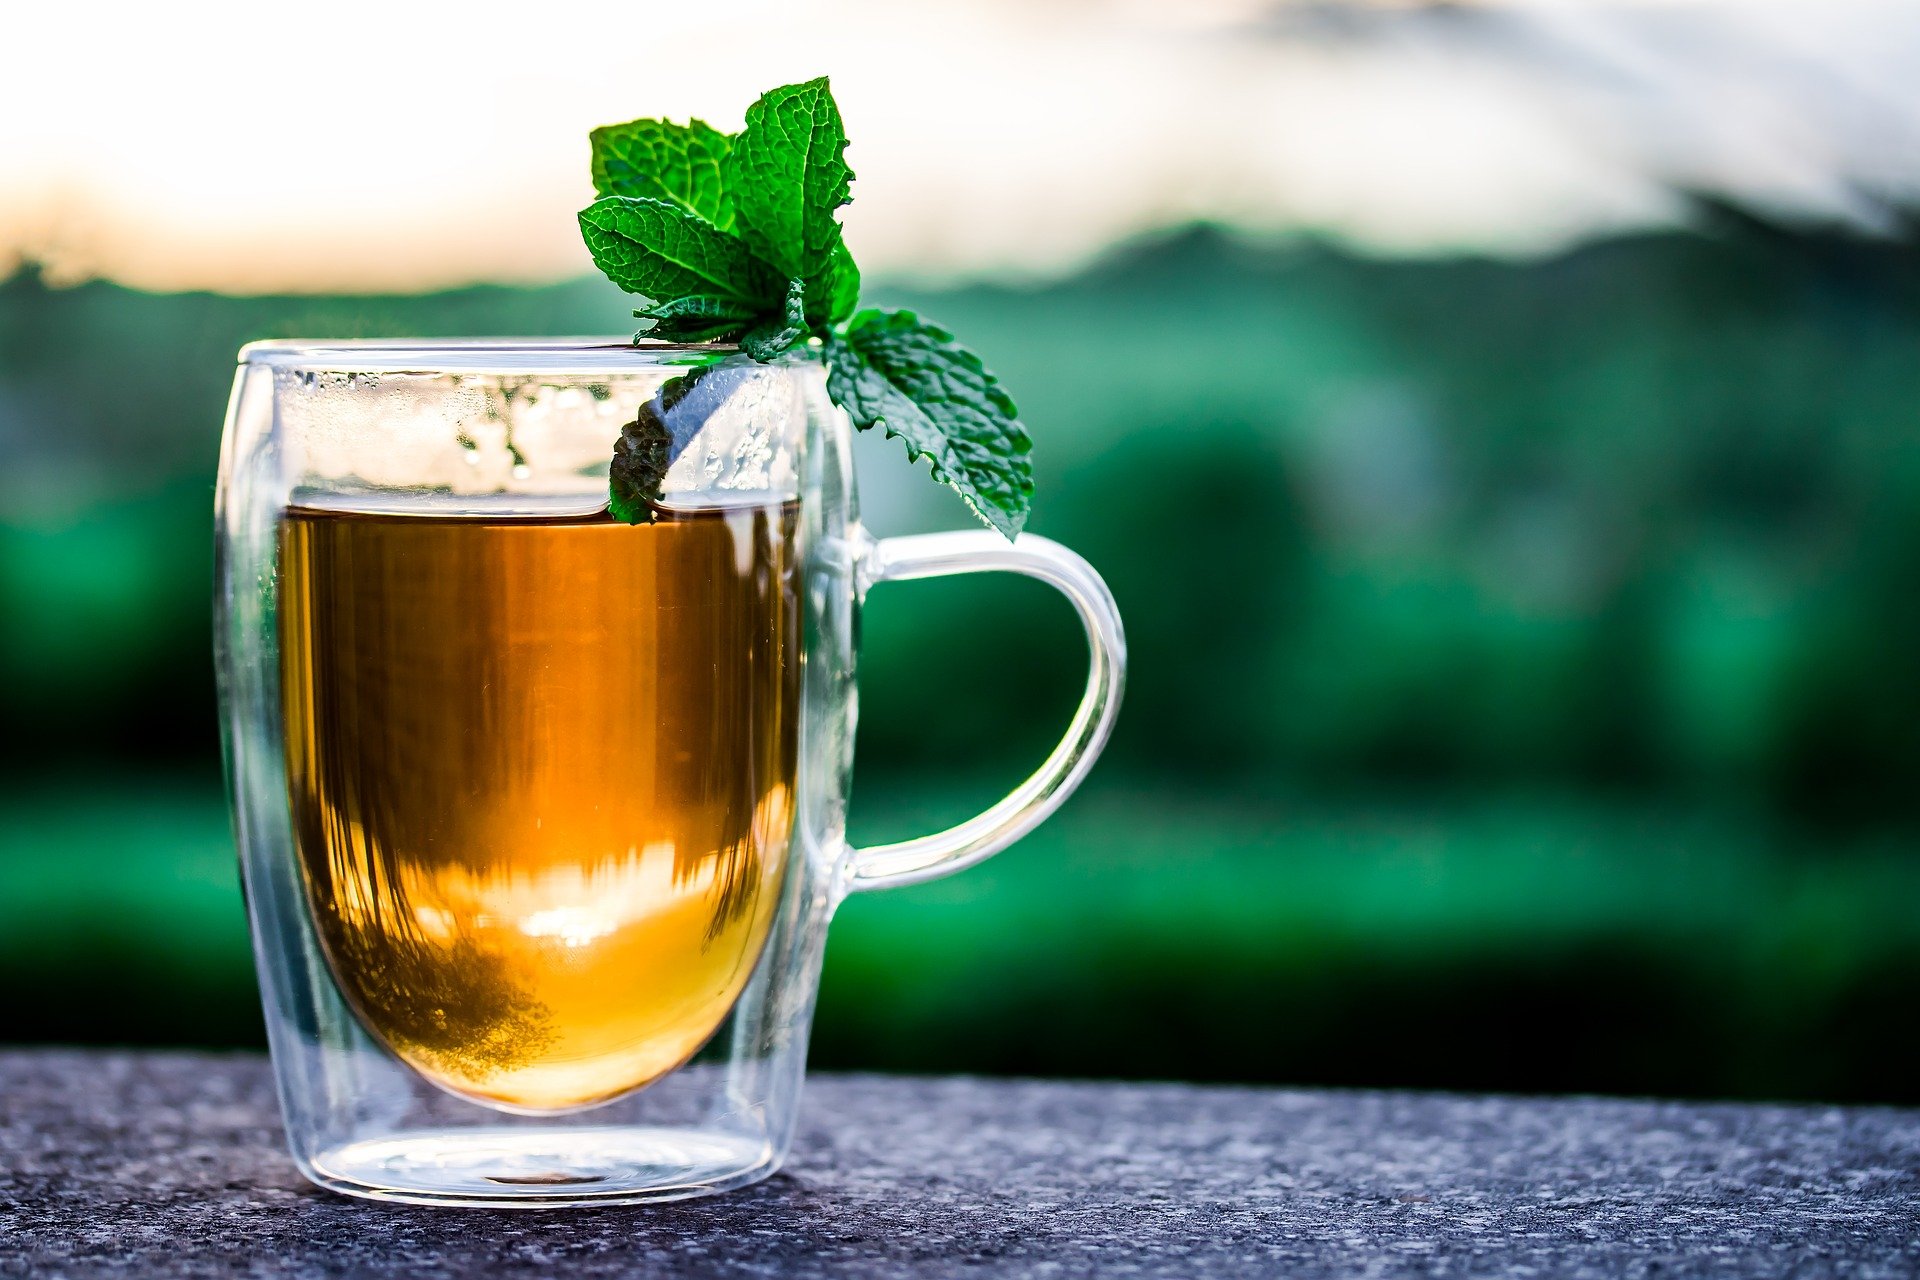 किसी भी चाय प्रेमी को नहीं करना चाहिए चाय से जुड़े इन 5 मिथ्स पर भरोसा